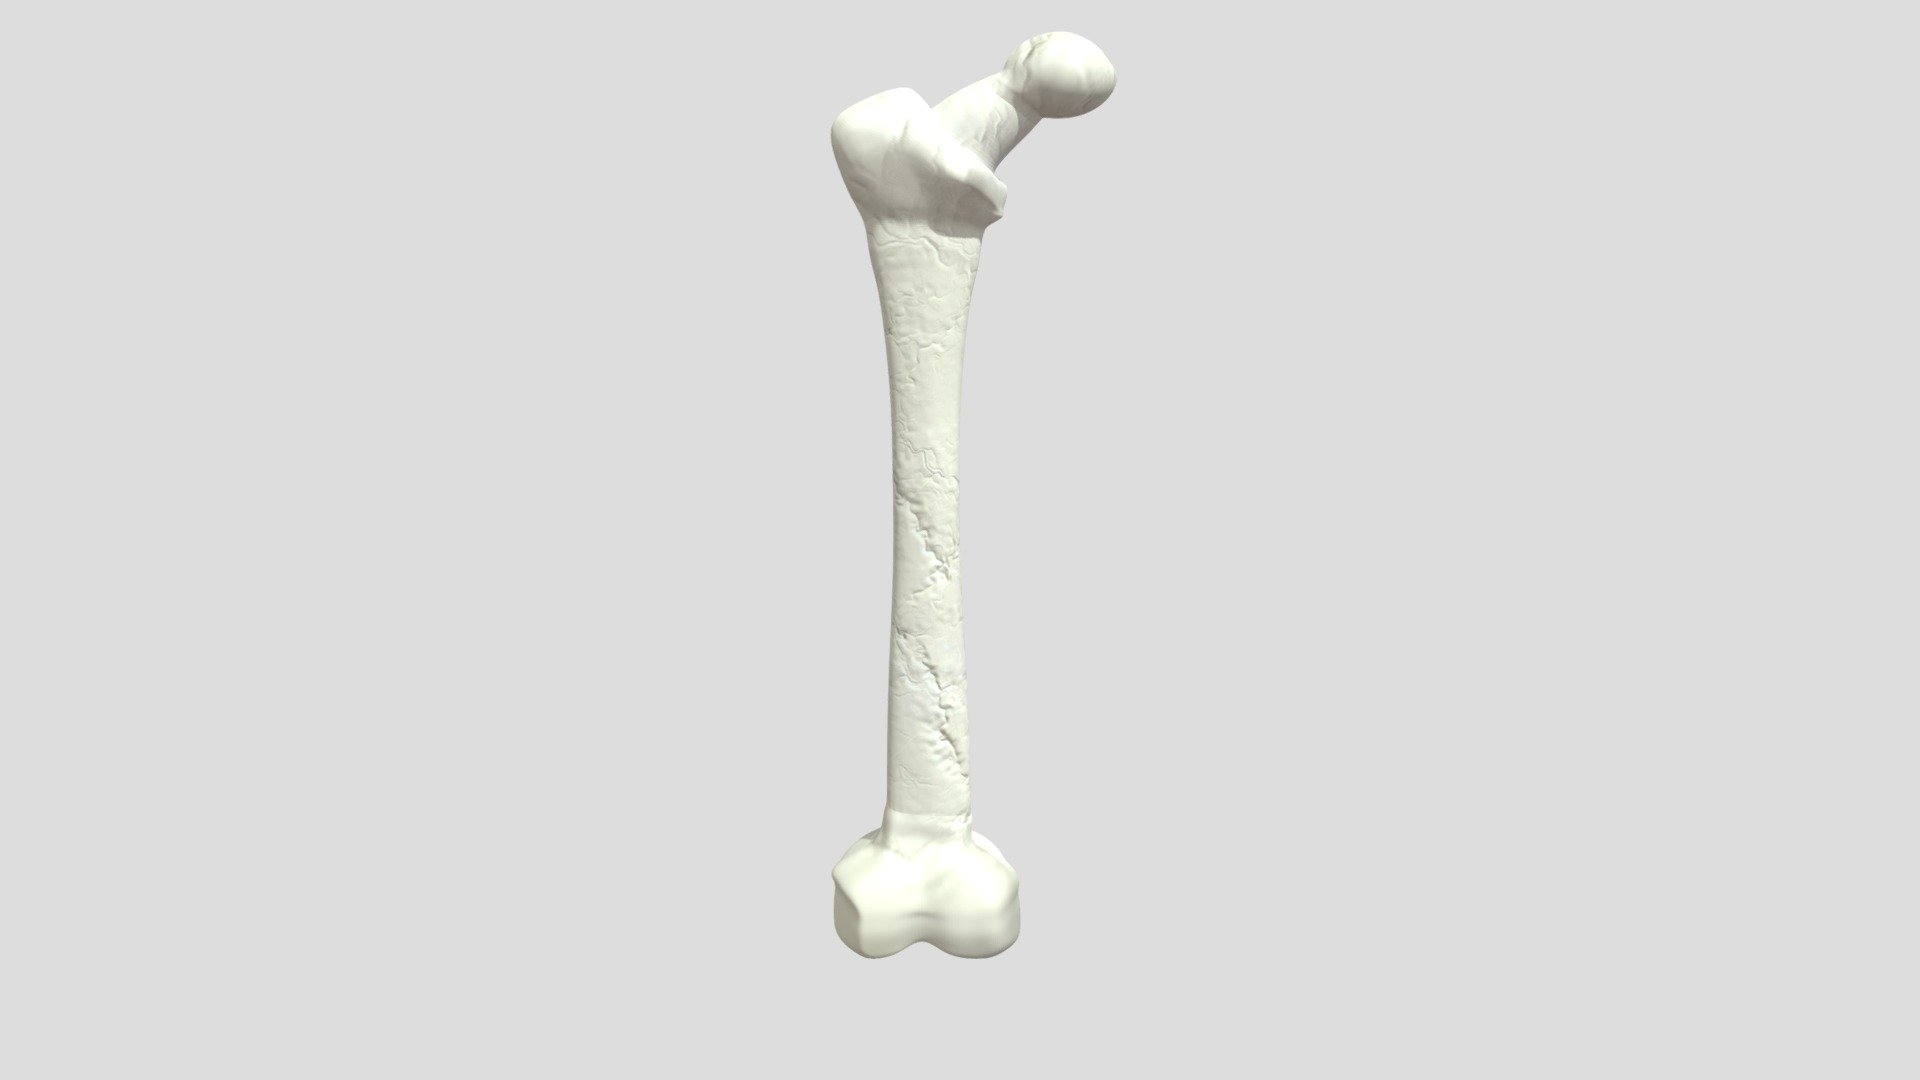 Femur bone